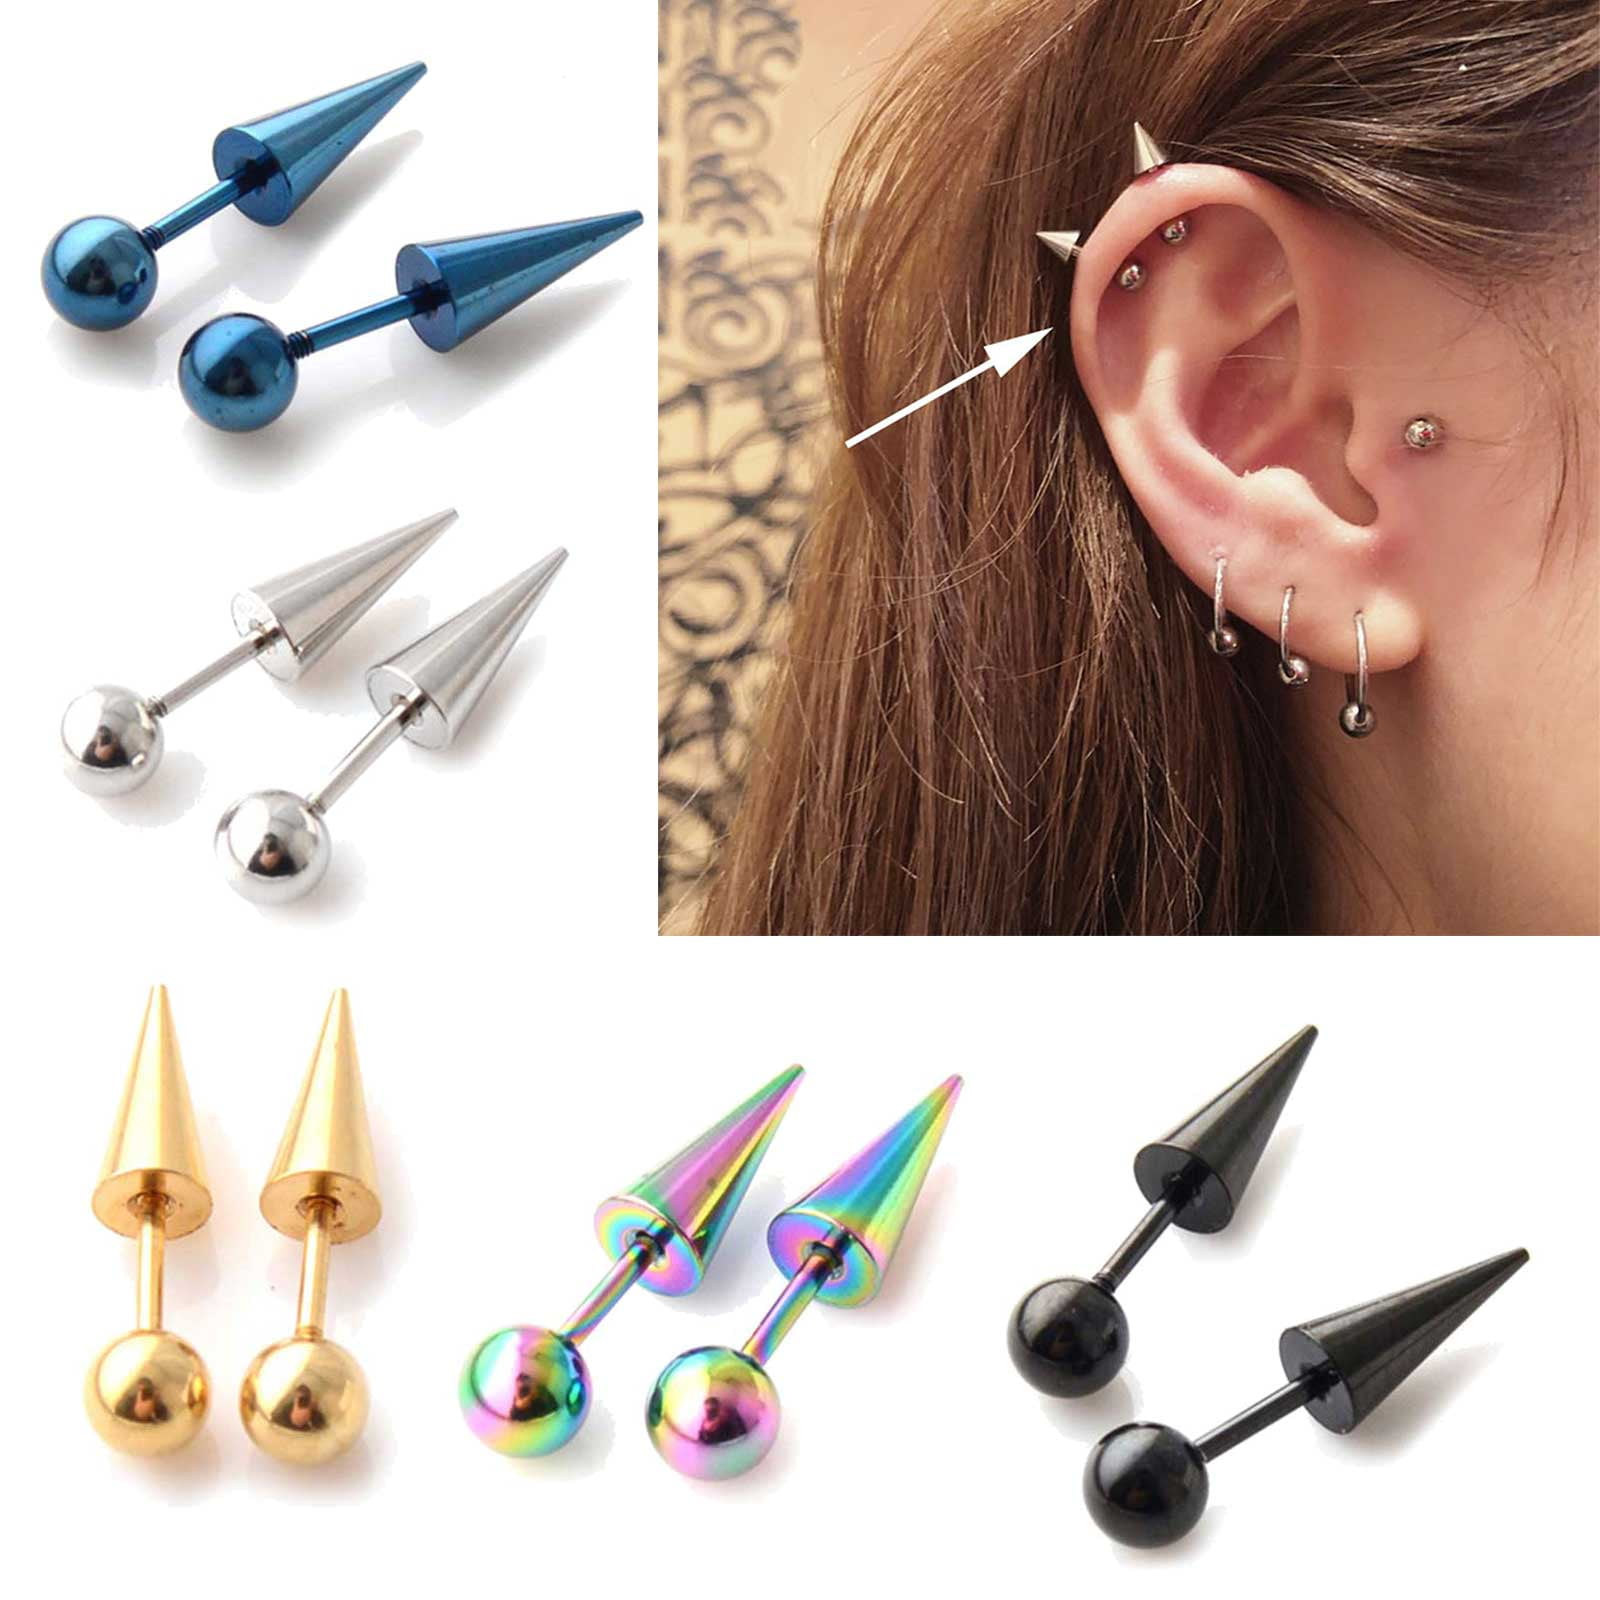 ZPAQI Round Ball Spike Stainless Steel Earring Barbell Metal Earrings  Tragus Ear Piercing Helix Earrings Body Jewelry 5 Colors